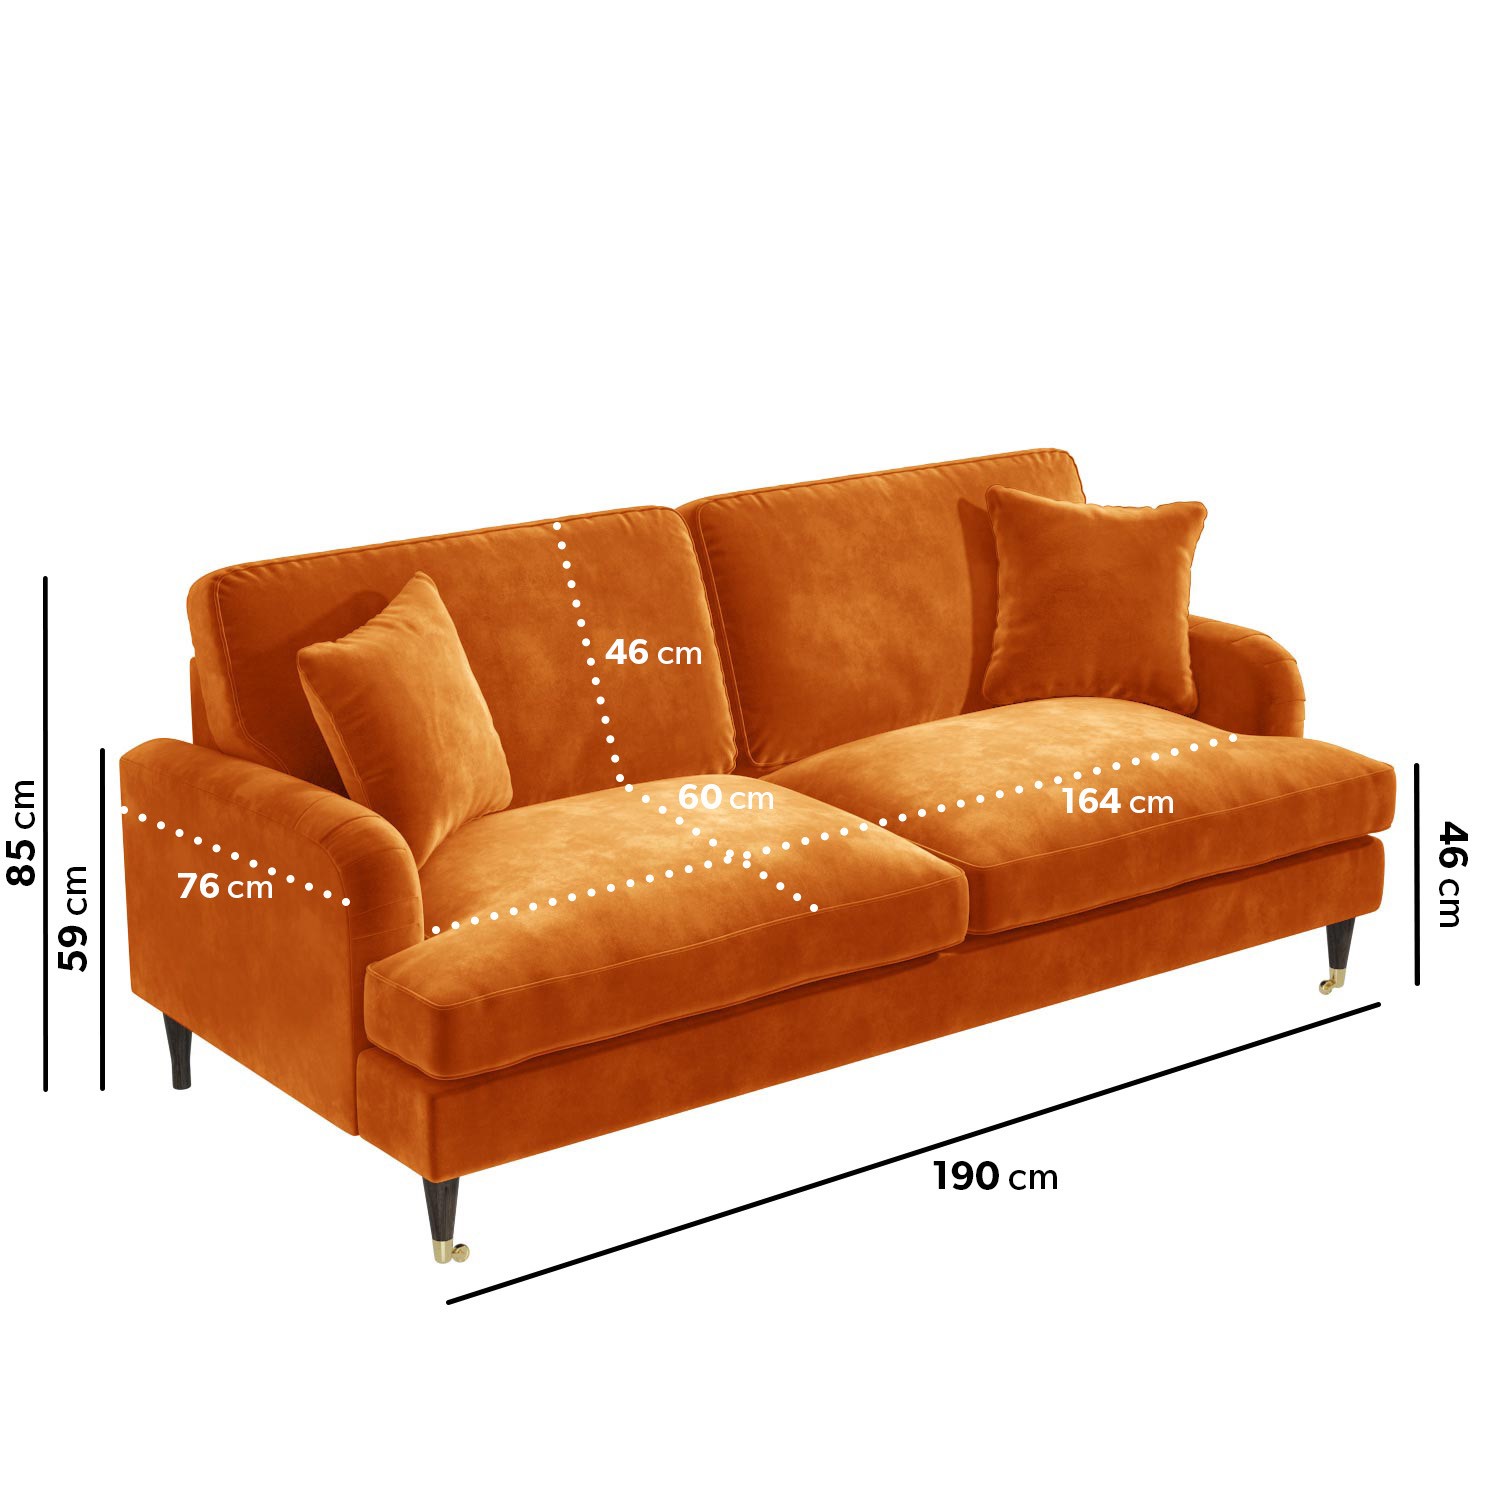 Read more about Orange velvet 3 seater sofa payton